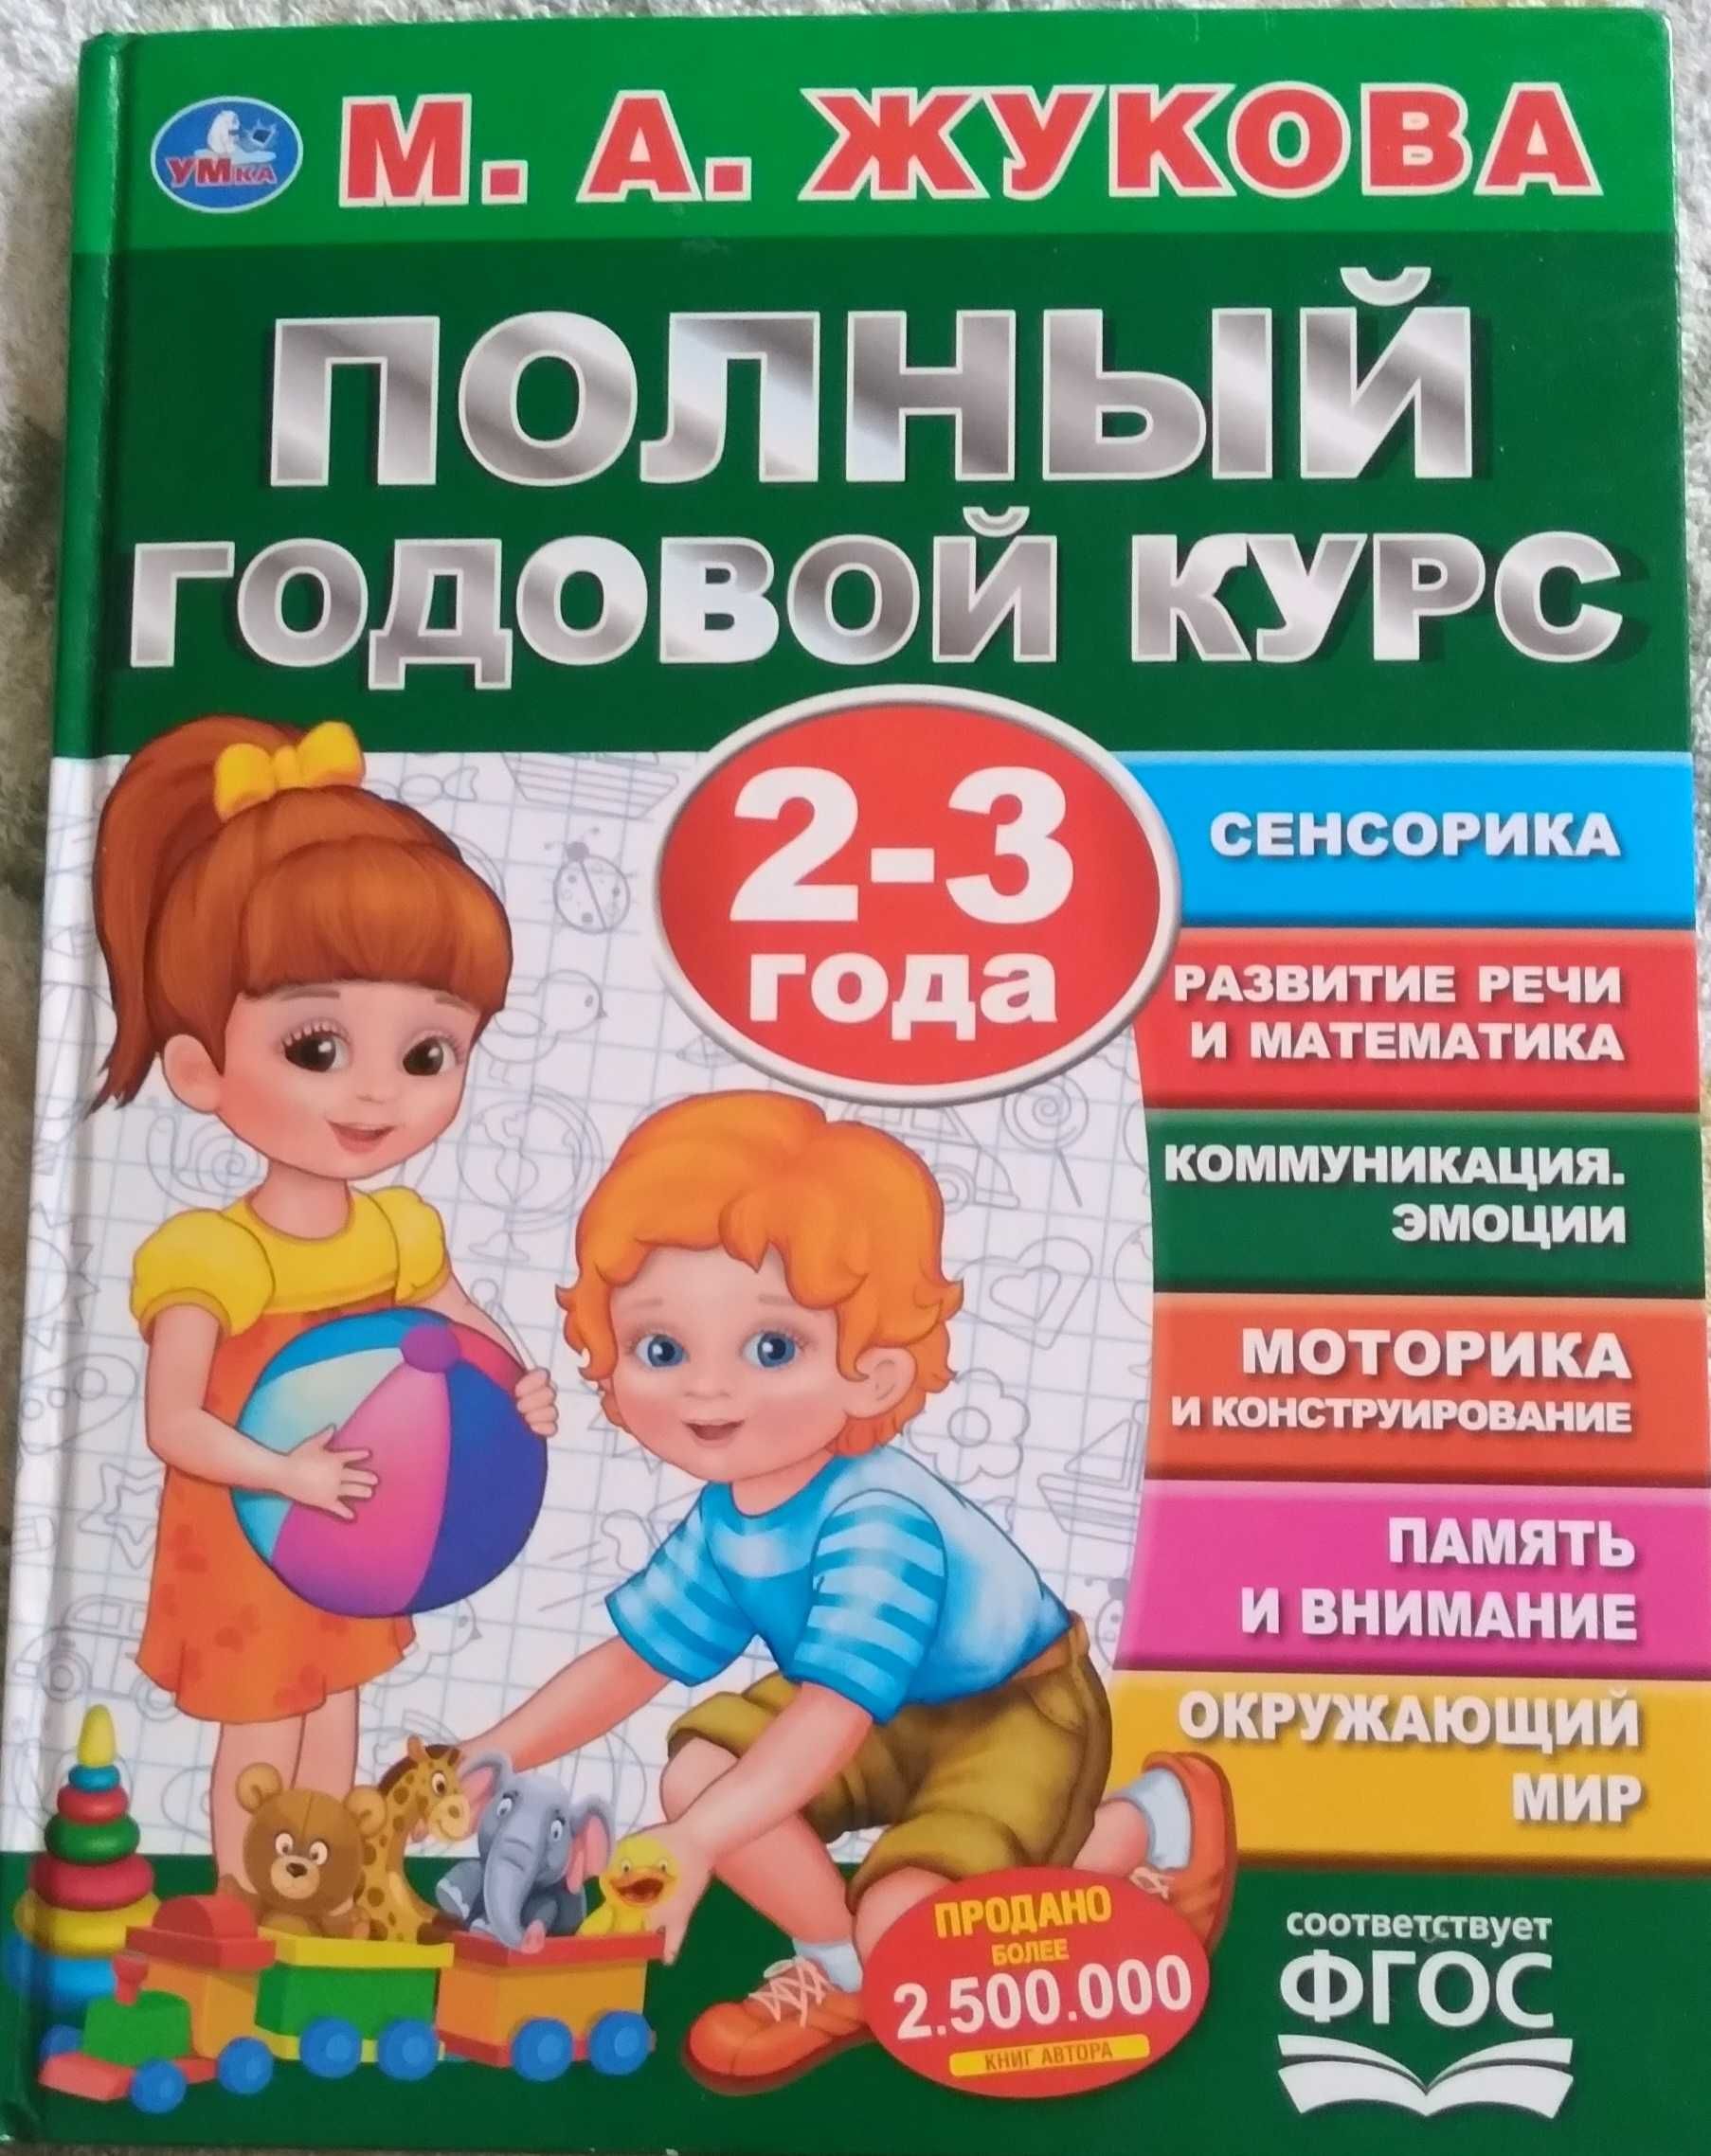 Продам книги детские в отличном состоянии